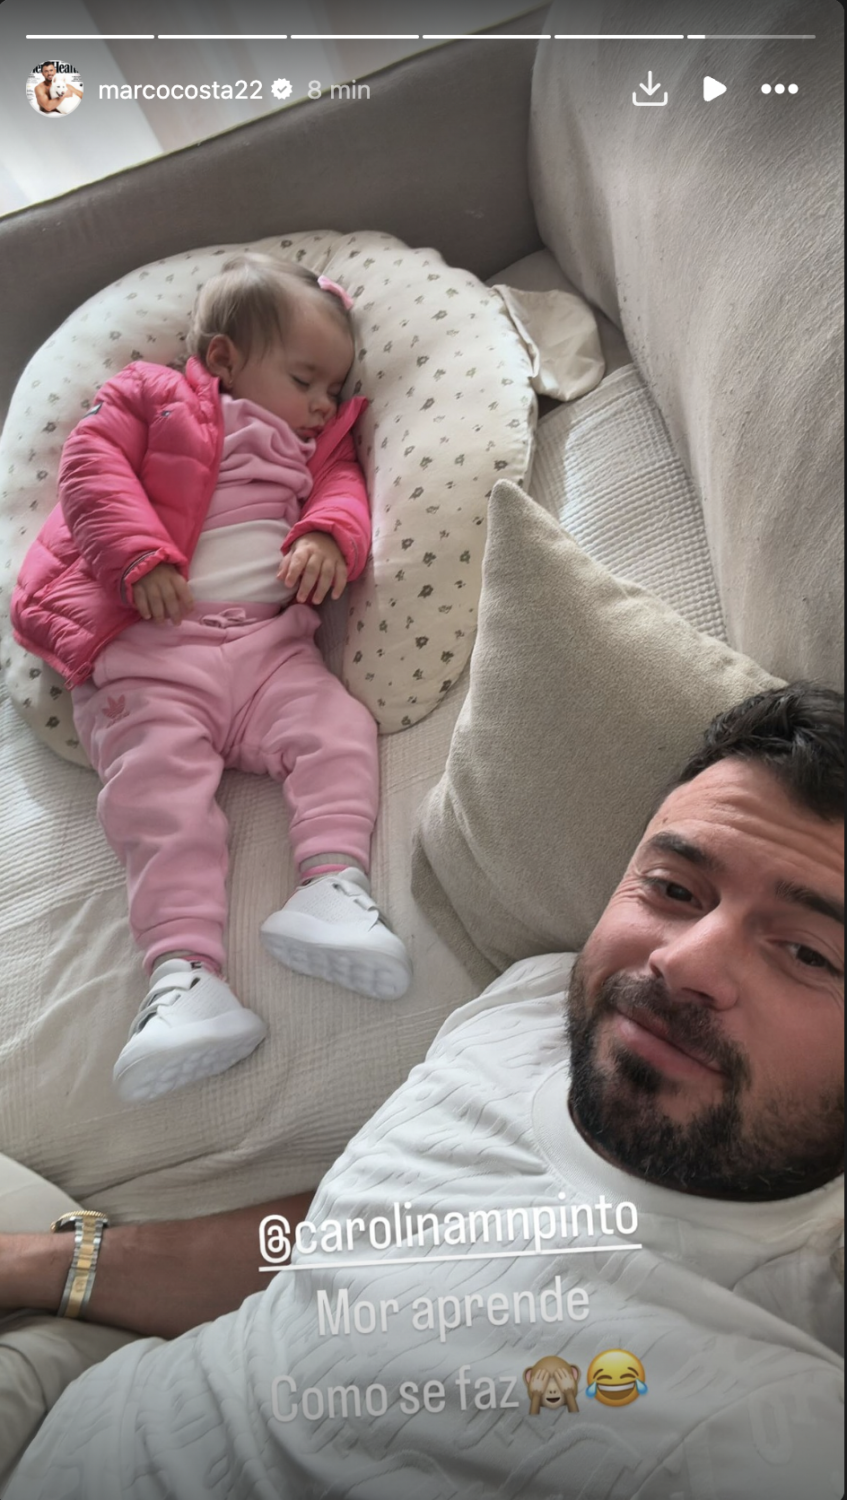 Marco Costa revela (bonita) foto da filha a dormir e deixa &#8216;recado&#8217; à namorada: &#8220;Aprende&#8221;